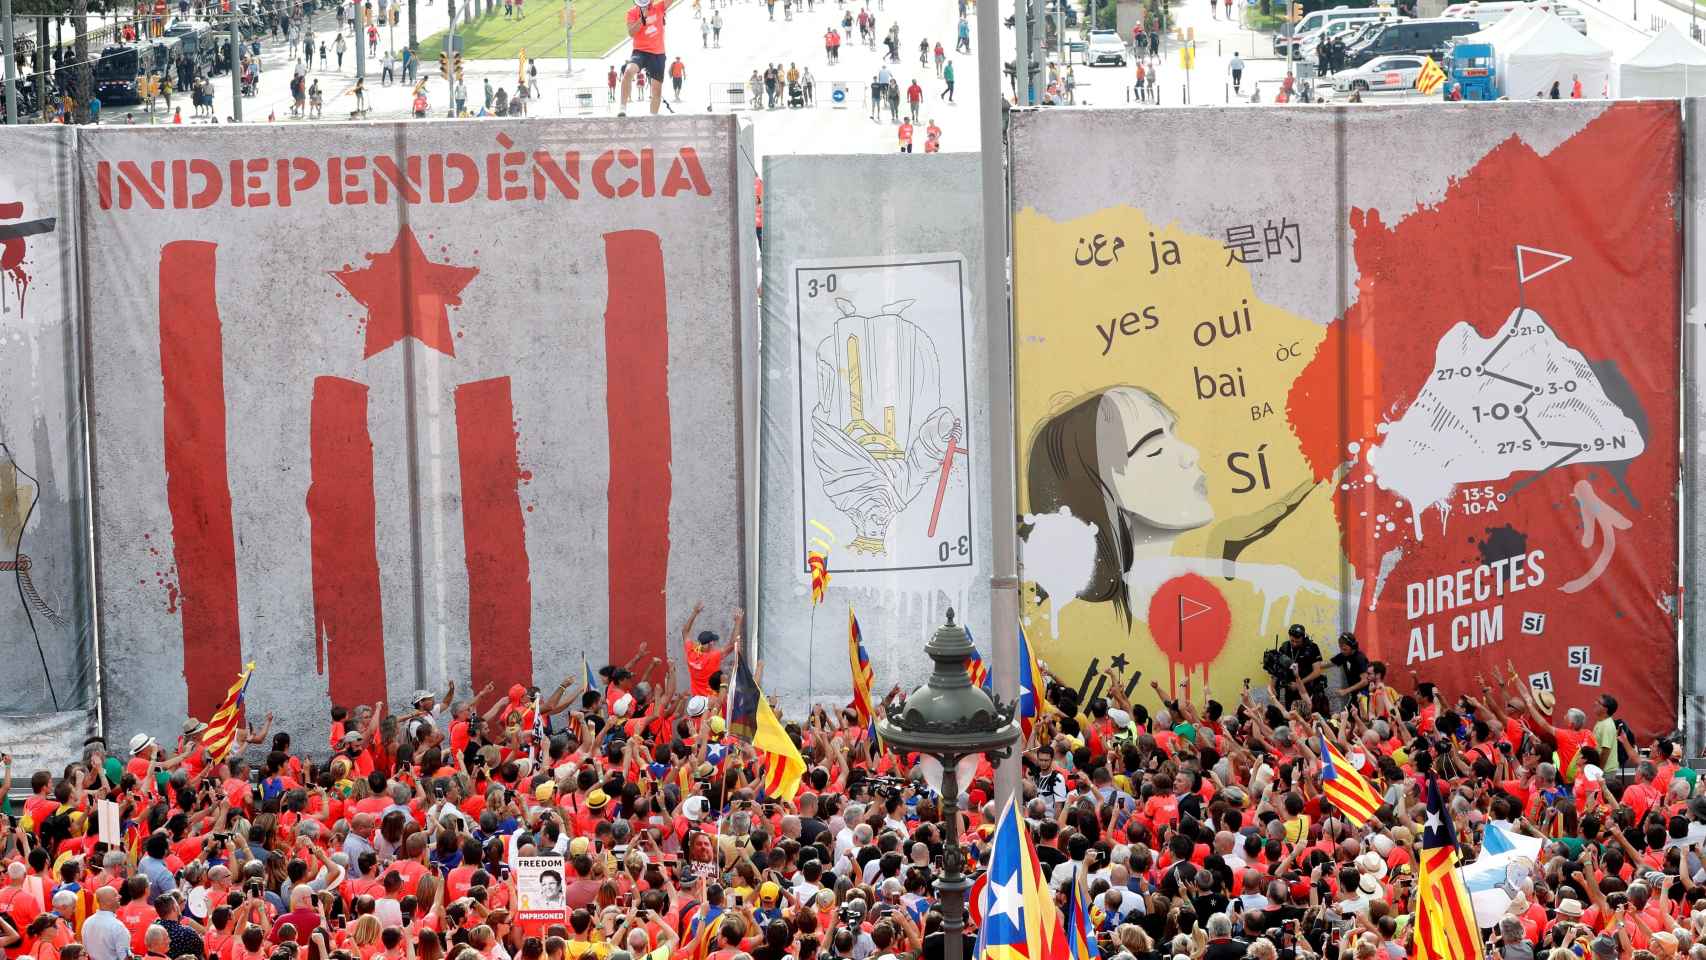 Imagen del muro construido por ANC para la manifestación independentista.